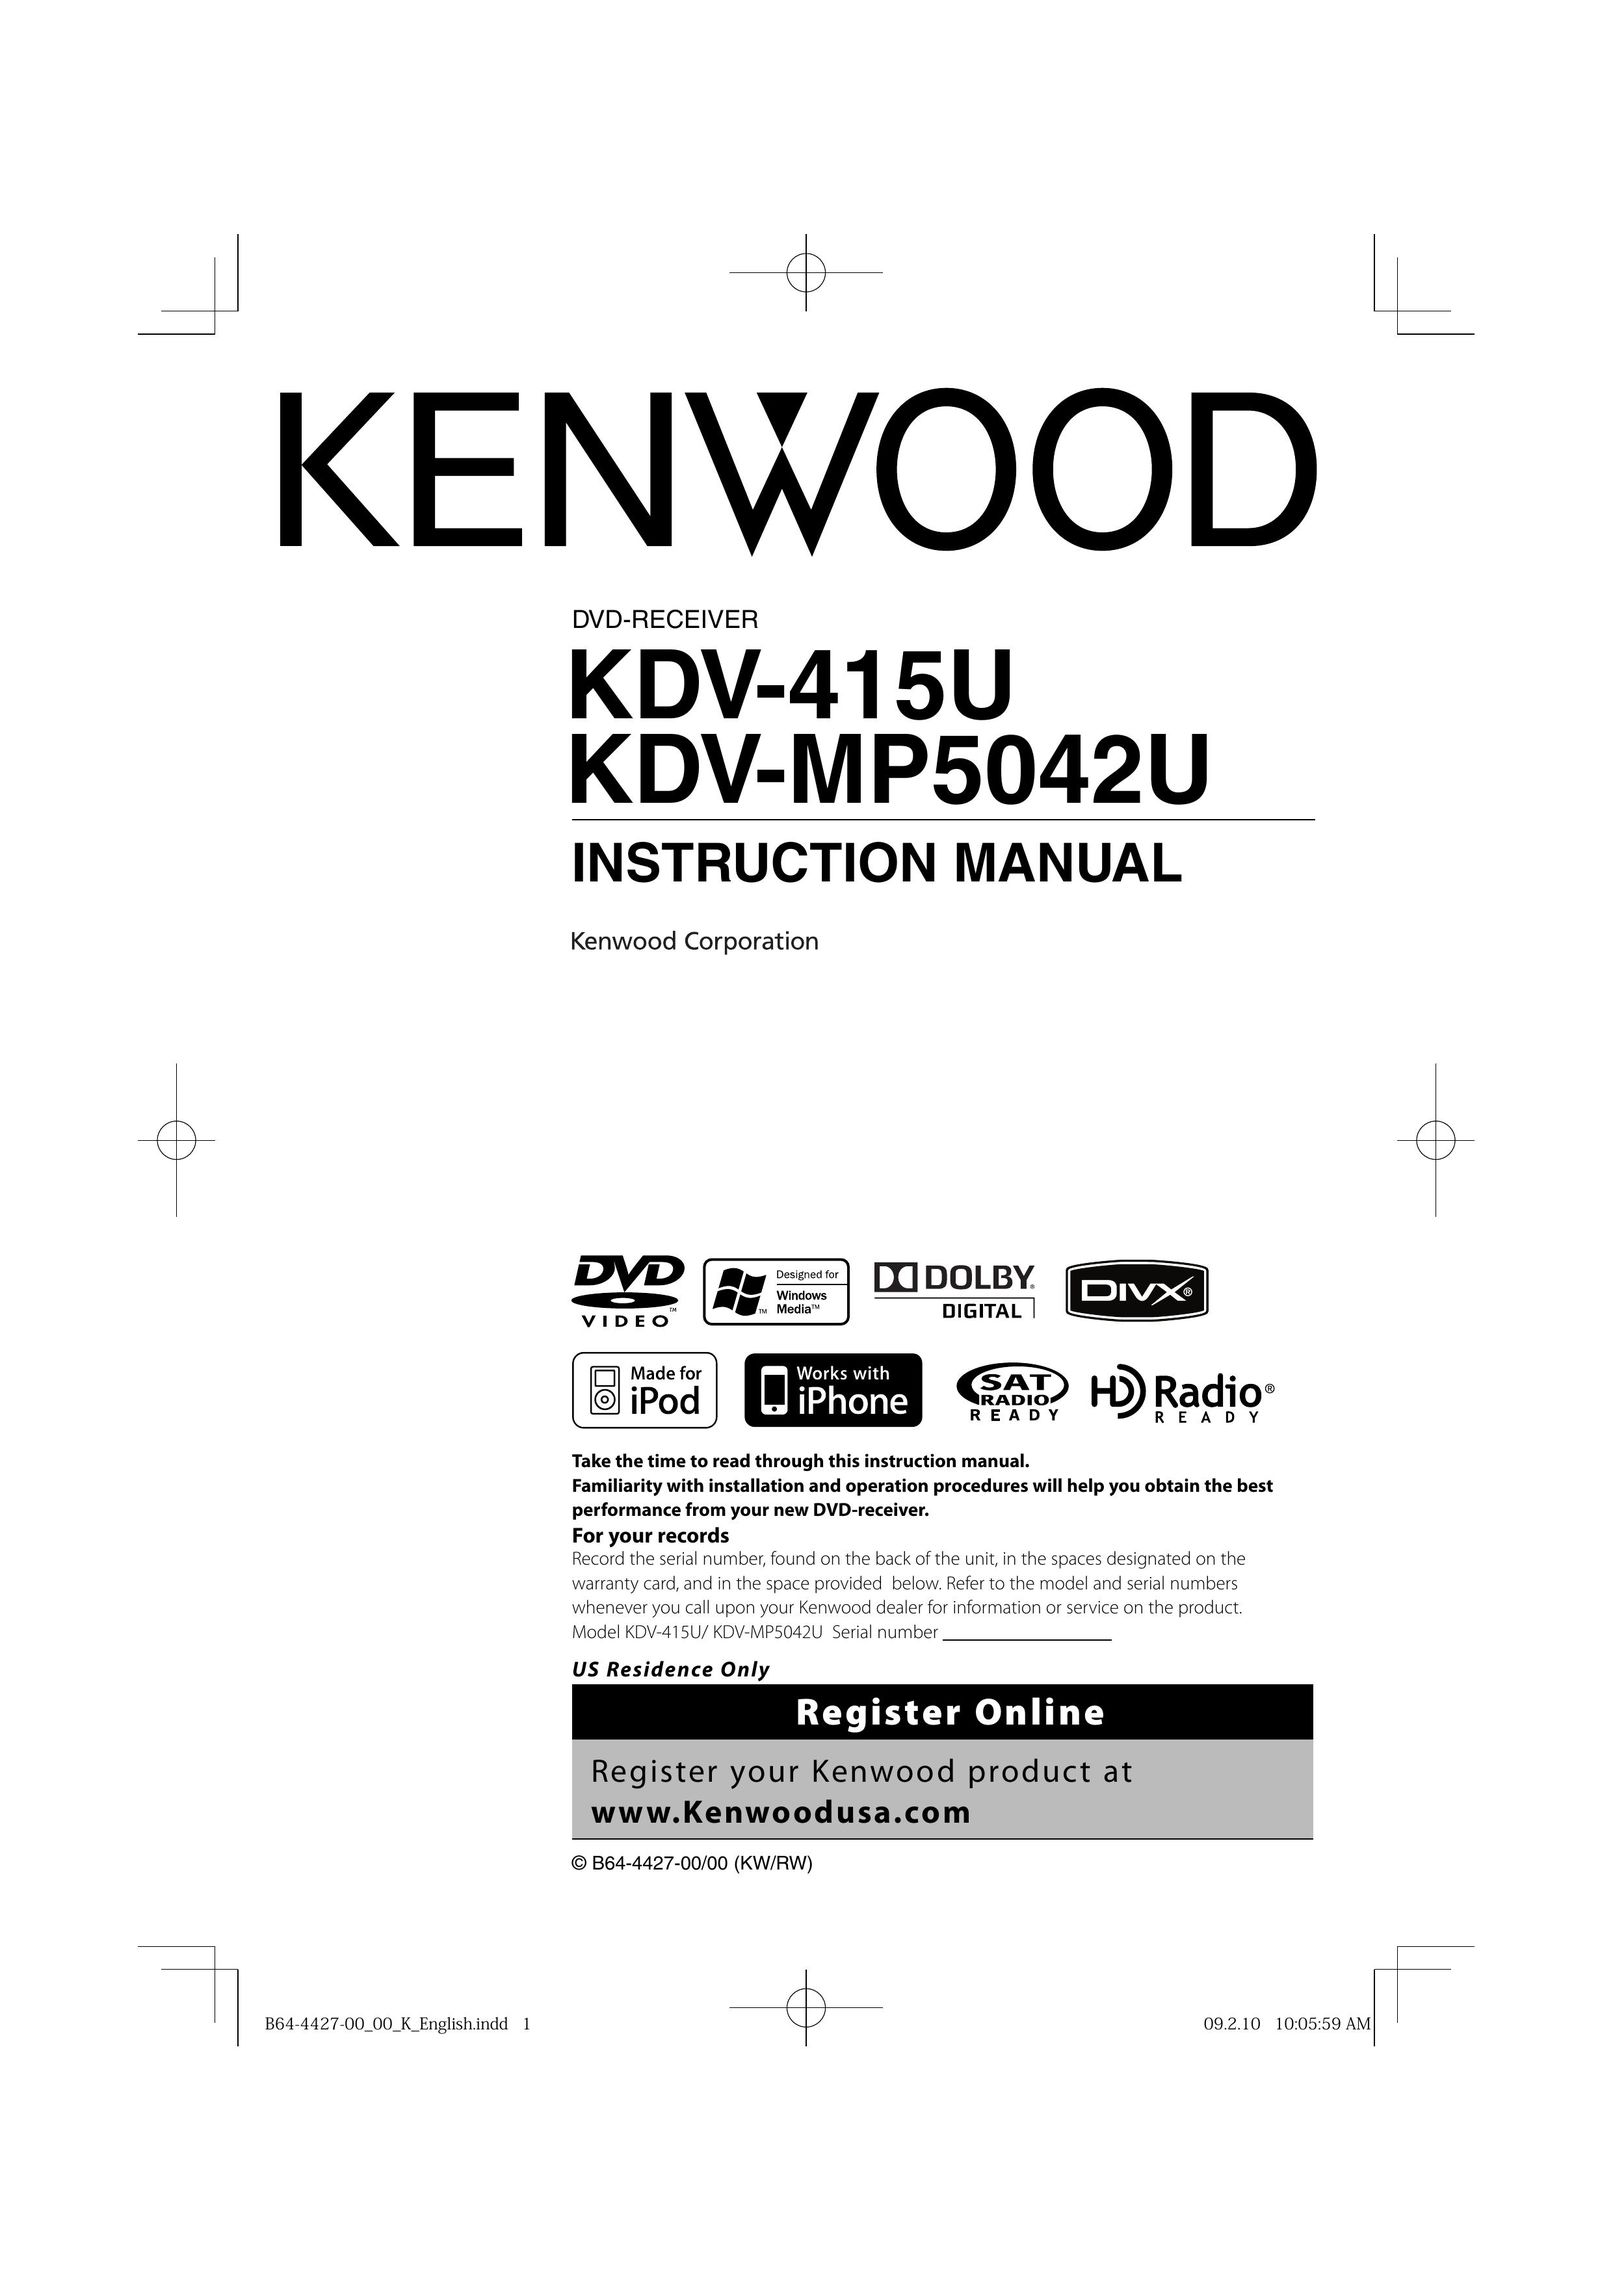 Kenwood KDV-415U DVD Player User Manual